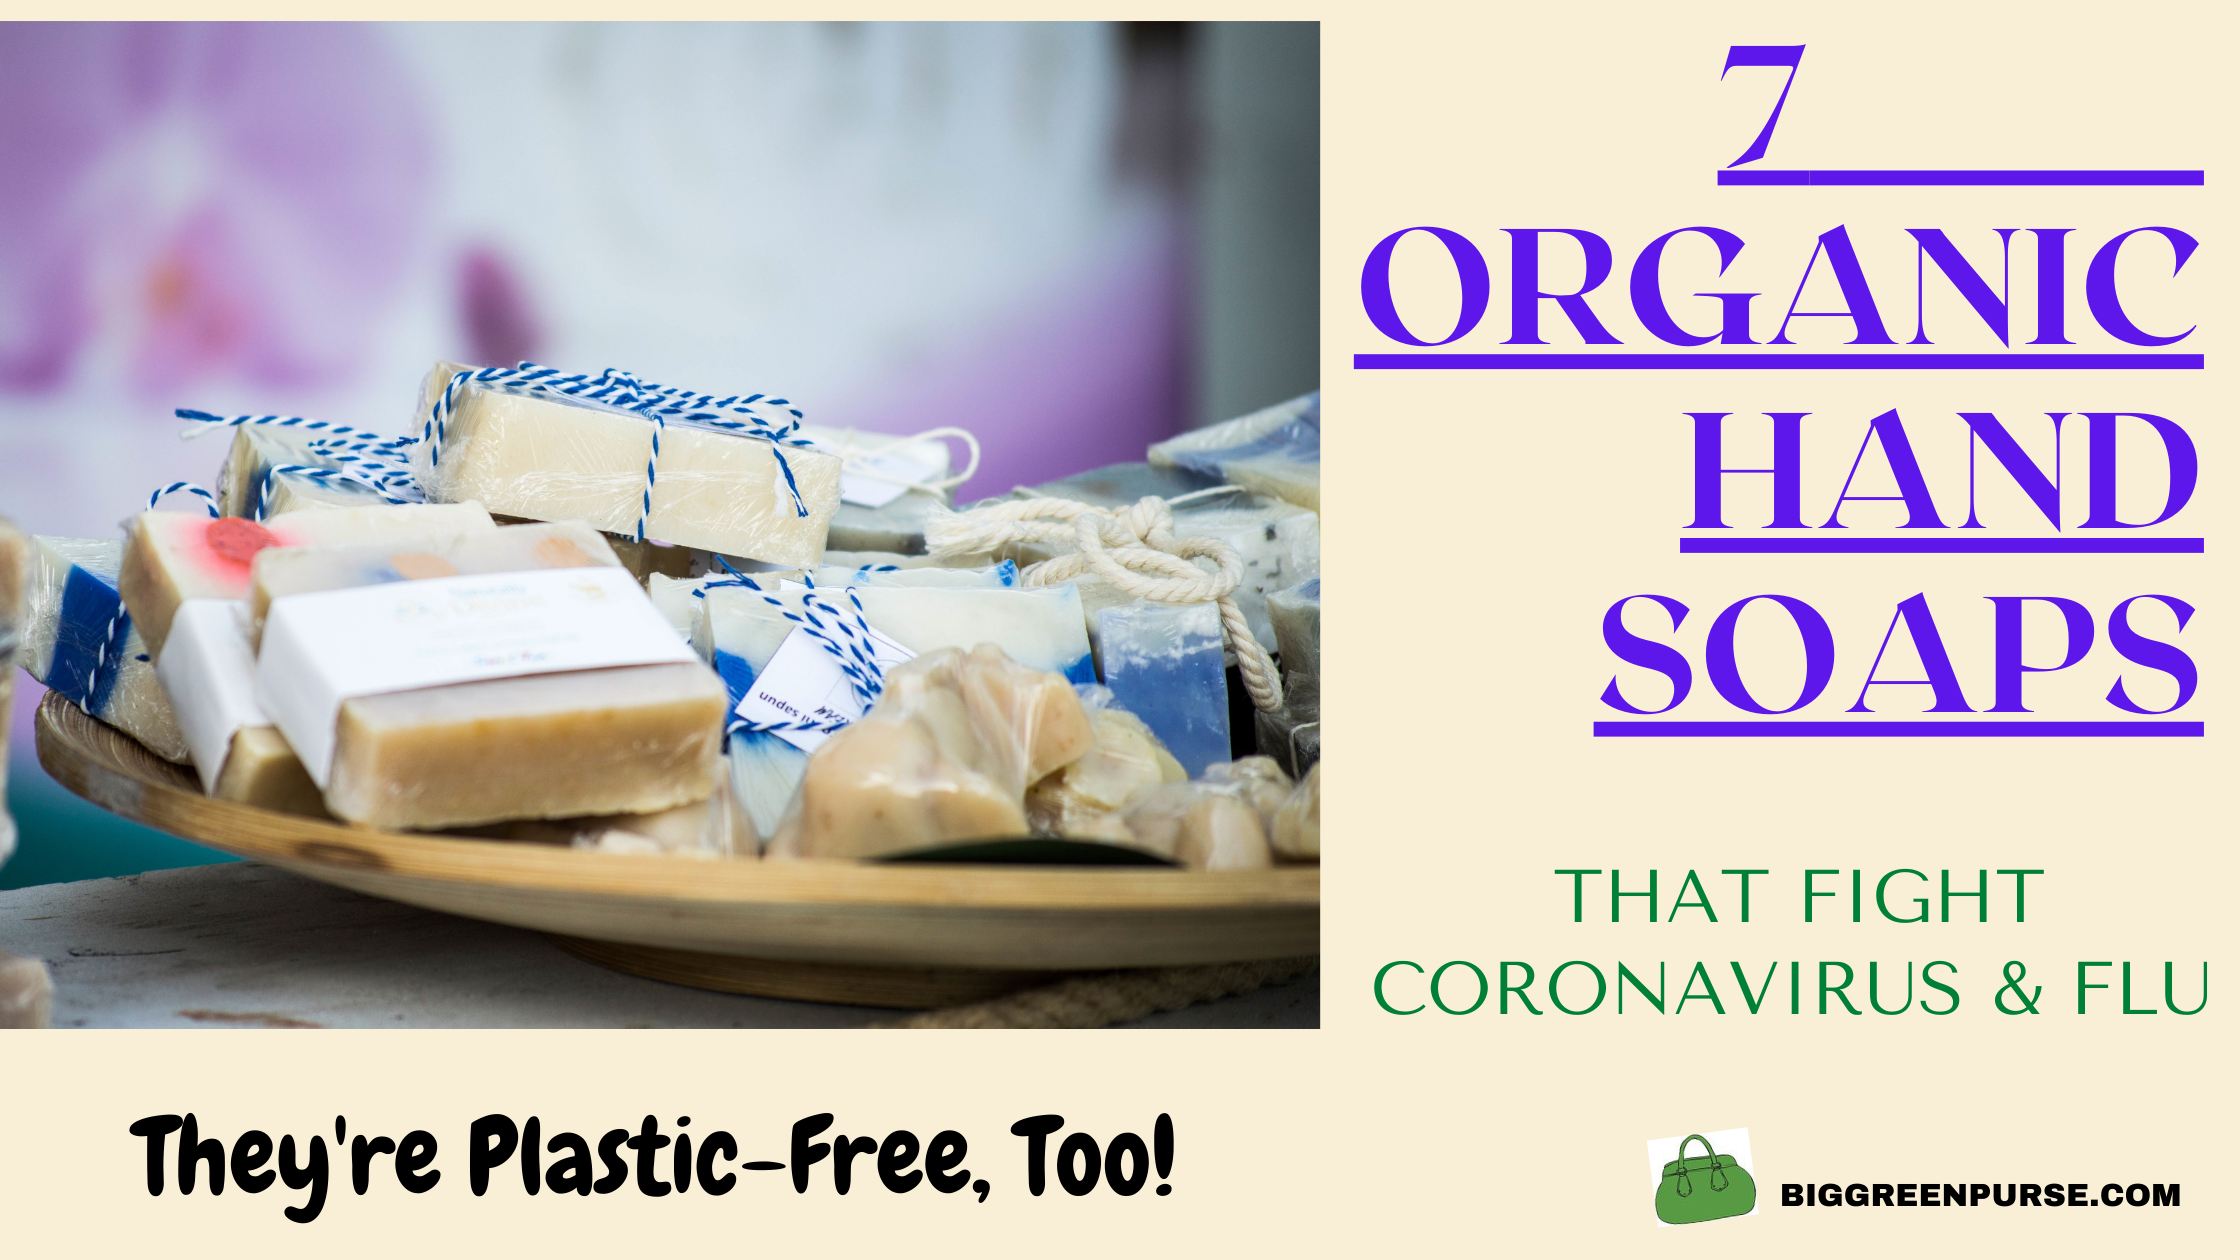 Here are 7 plastic-free organic hand soaps that fight Coronavirus